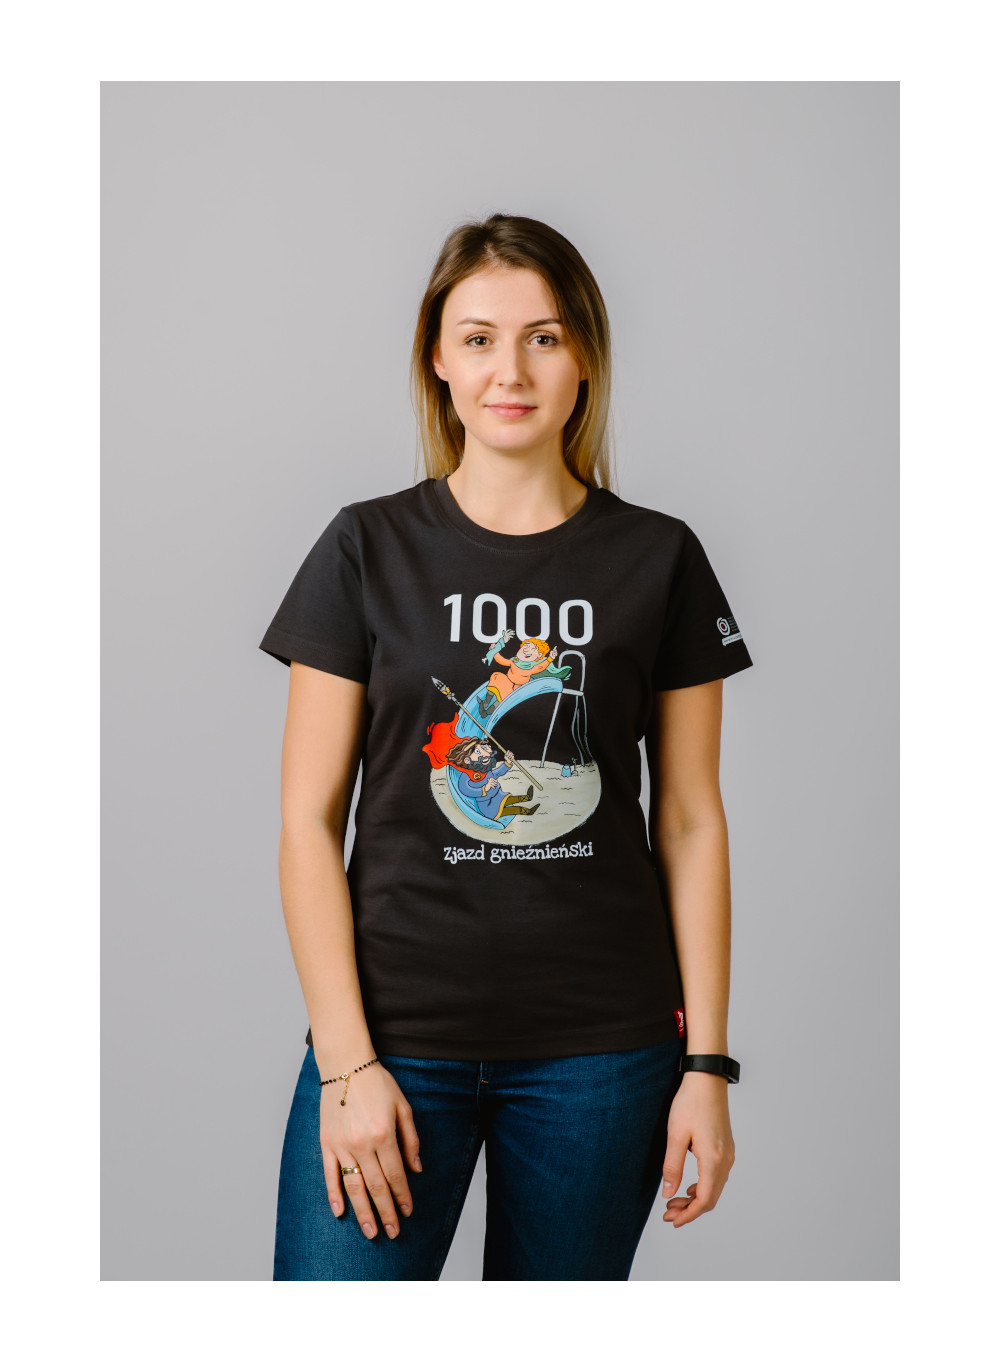 Koszulka 1000 zjazd gnieźnieński damska